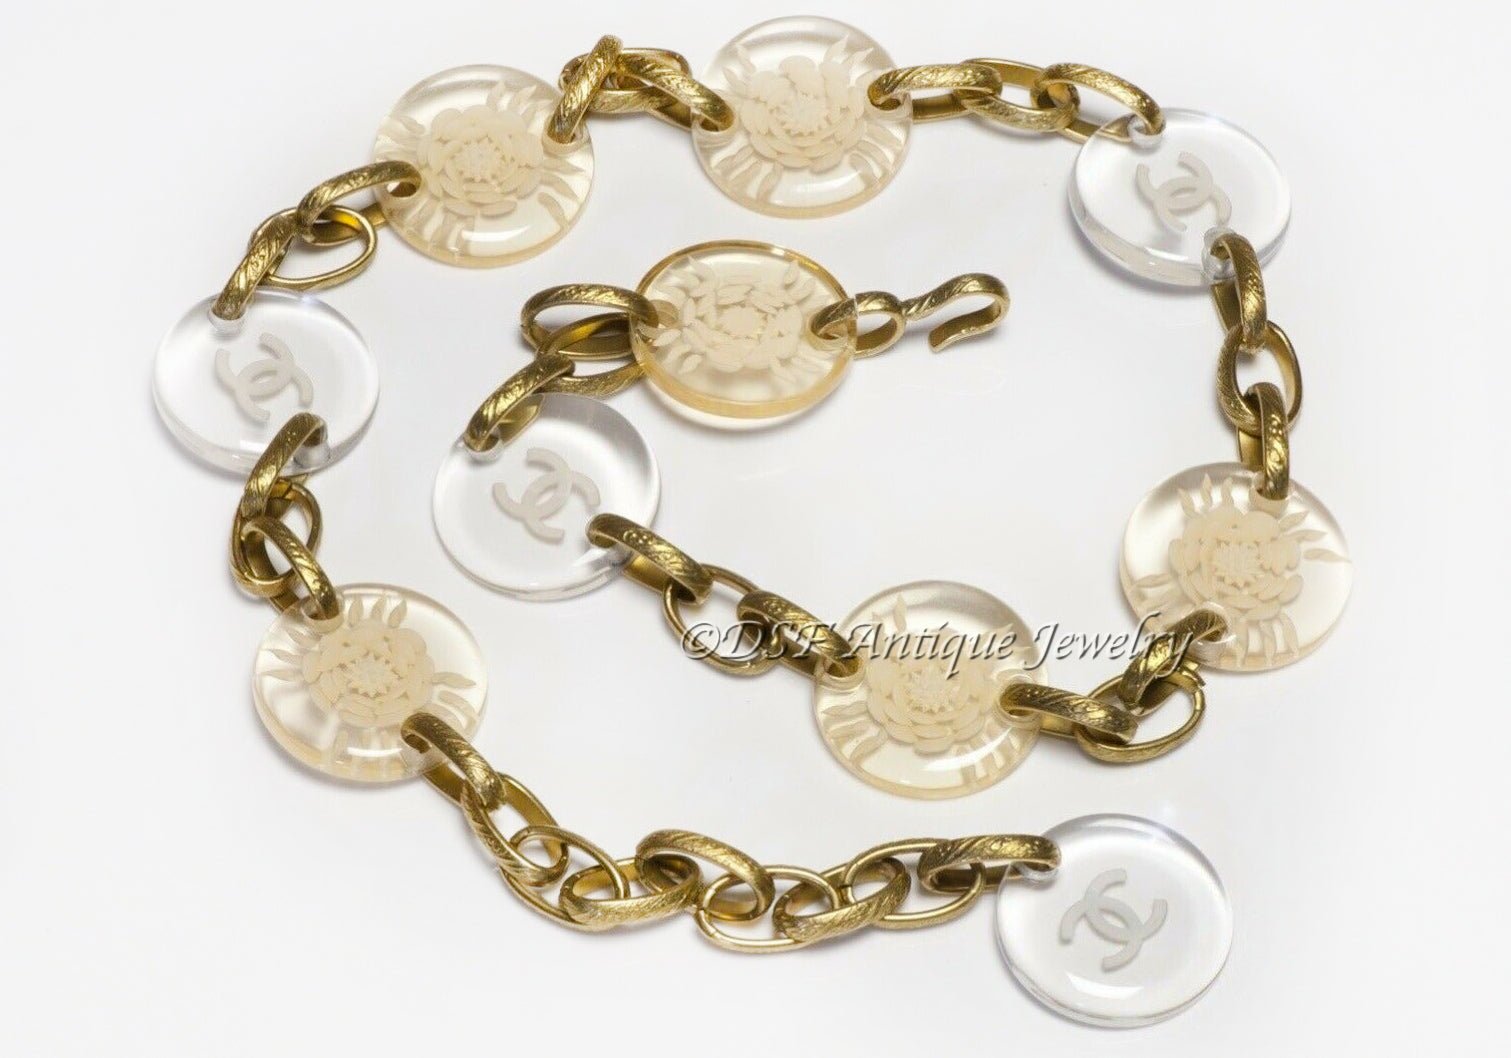 CHANEL Paris 1995 CC Camellia Flower Lucite Medallion Chain Belt - DSF Antique Jewelry